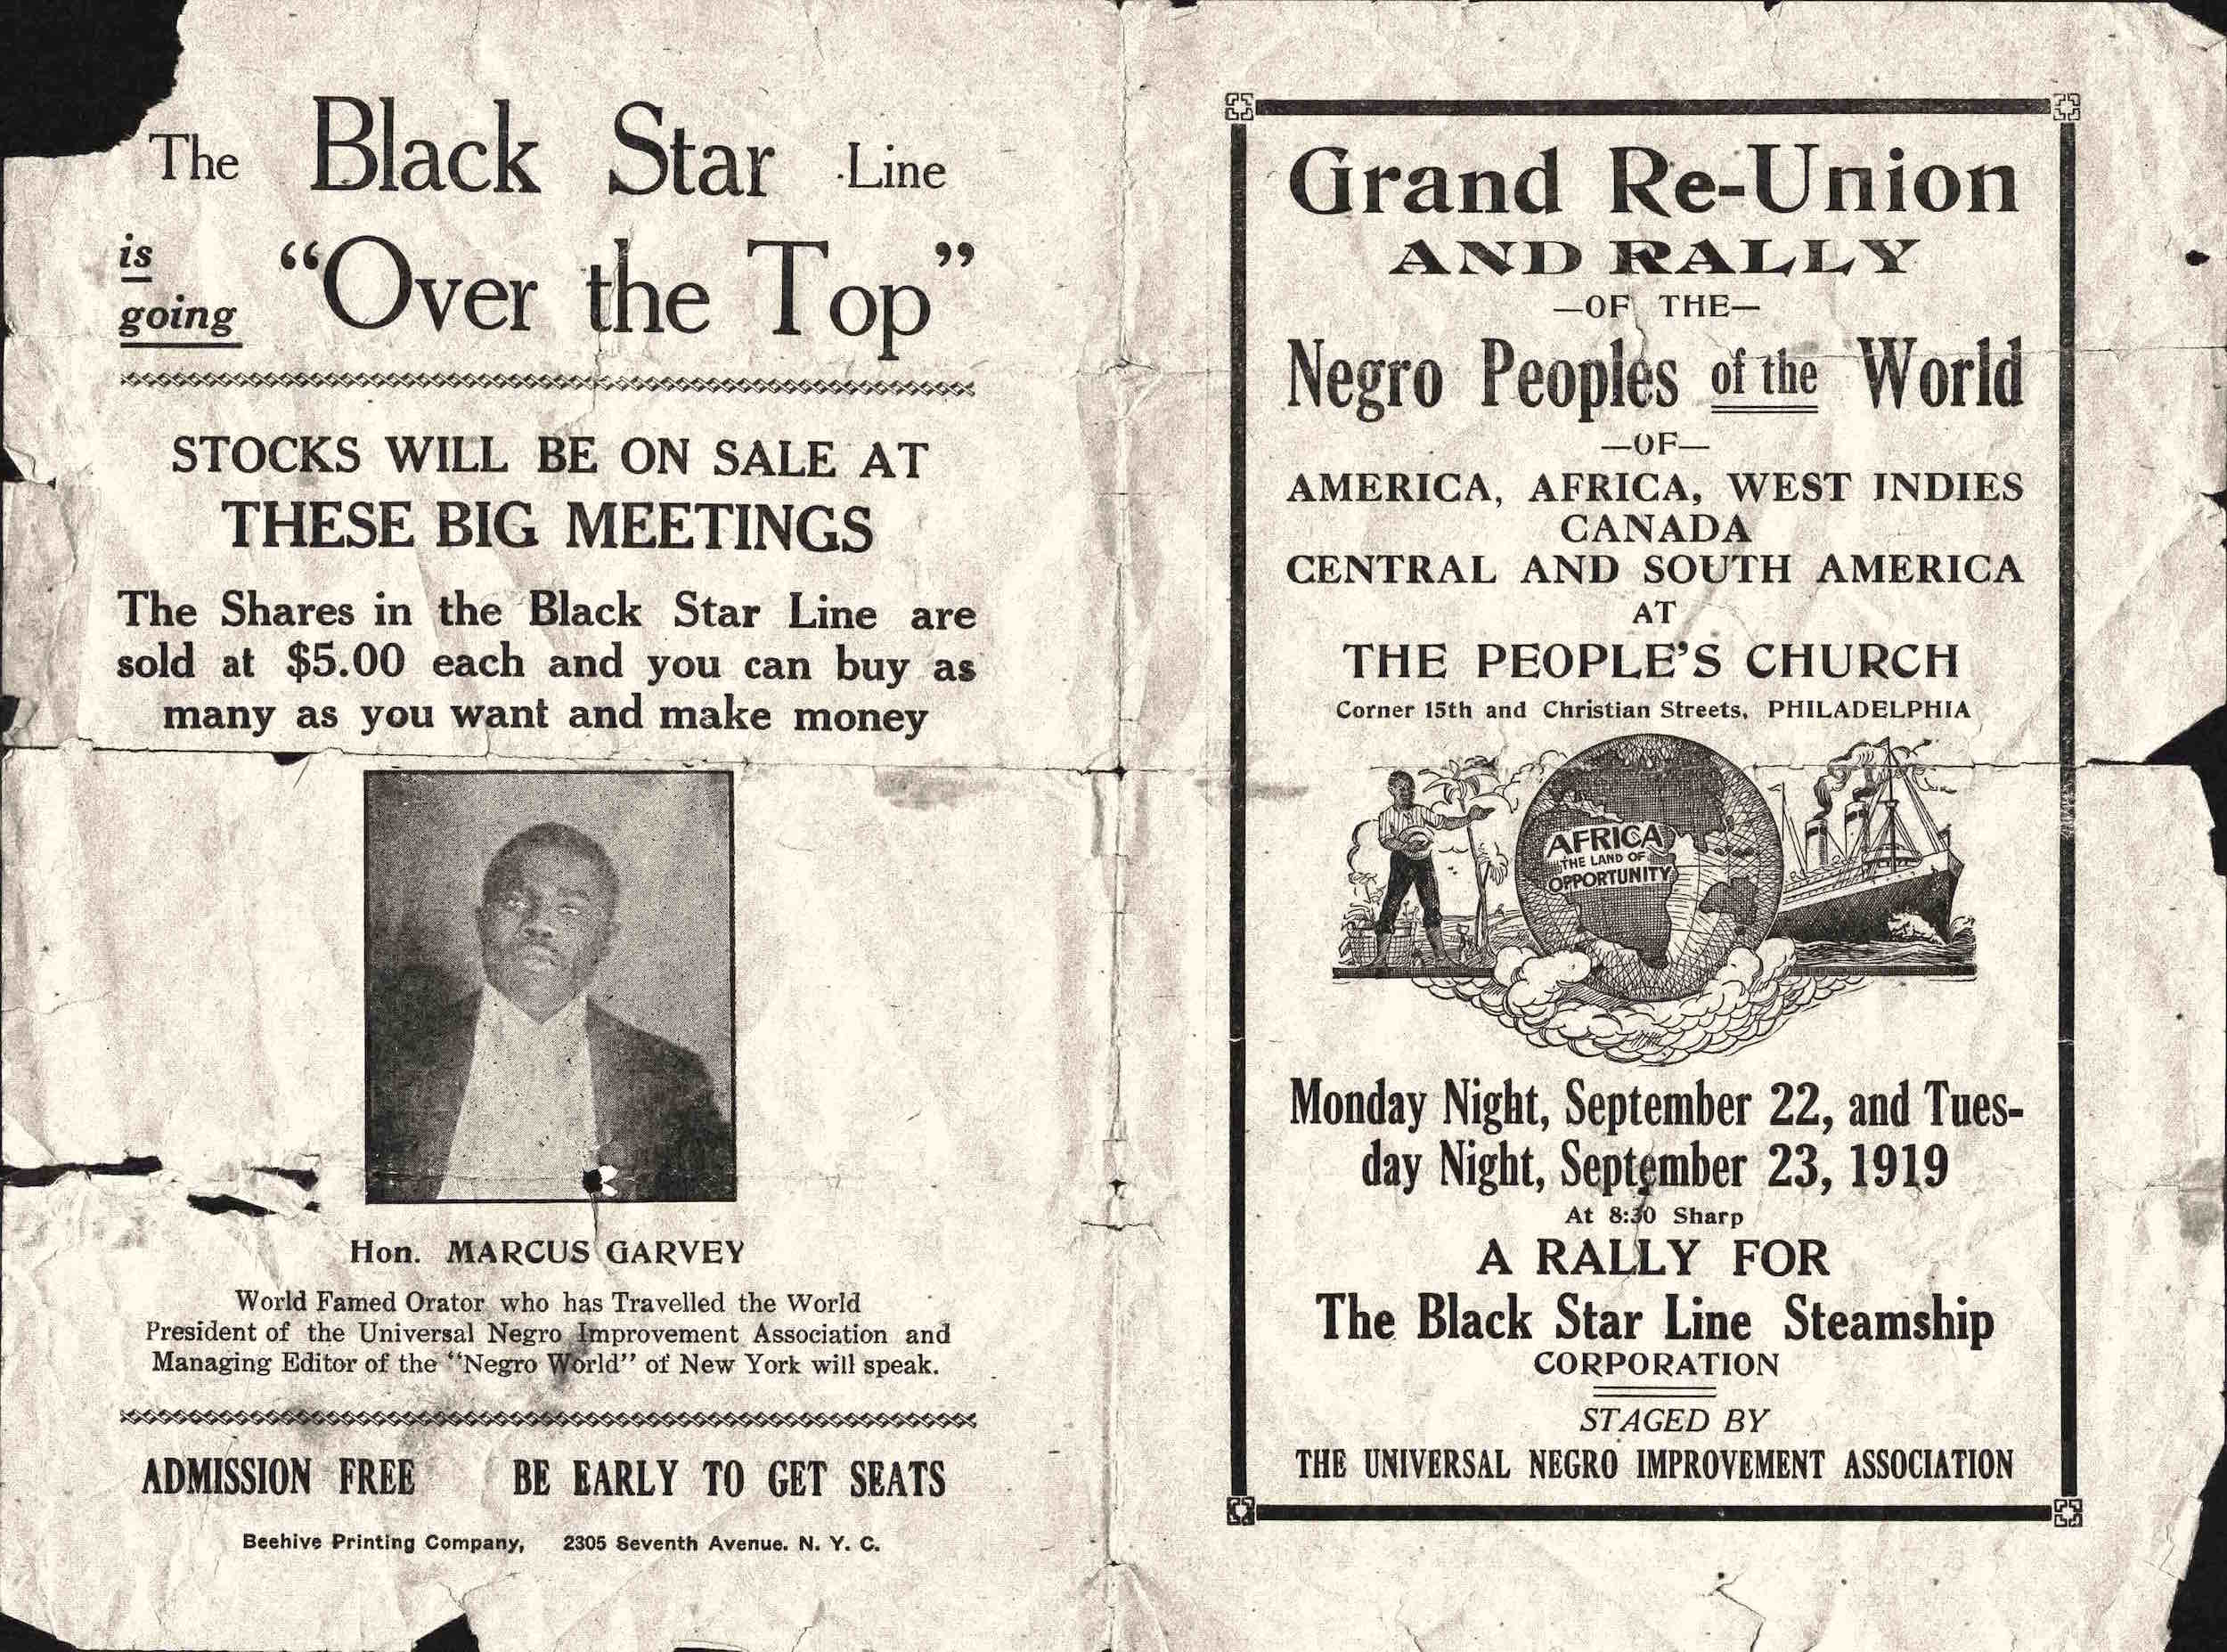 Flyer, U.N.I.A. Grand Reunion and Rally, Philadelphia, PA, 1919